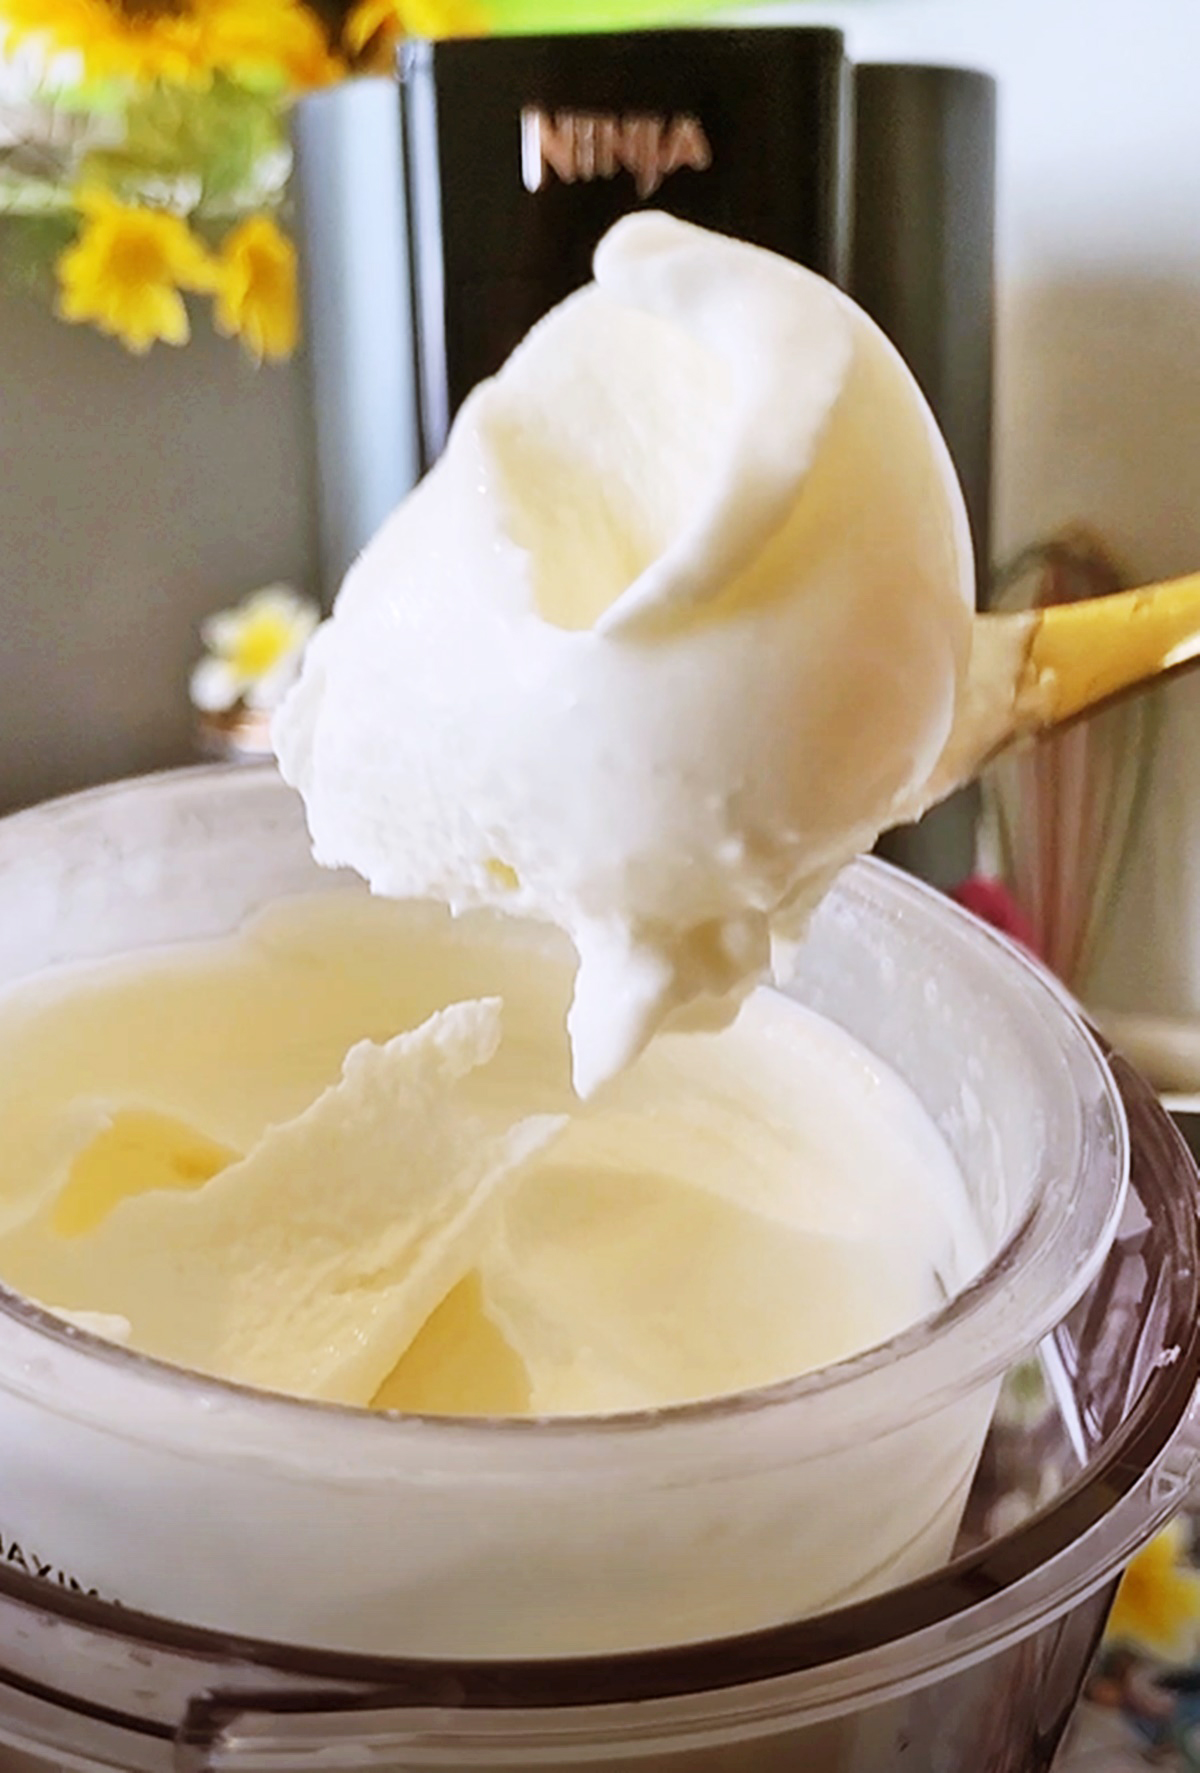 Ninja Creami  - домашнее мороженое за 5 минут. Видео рецепт.